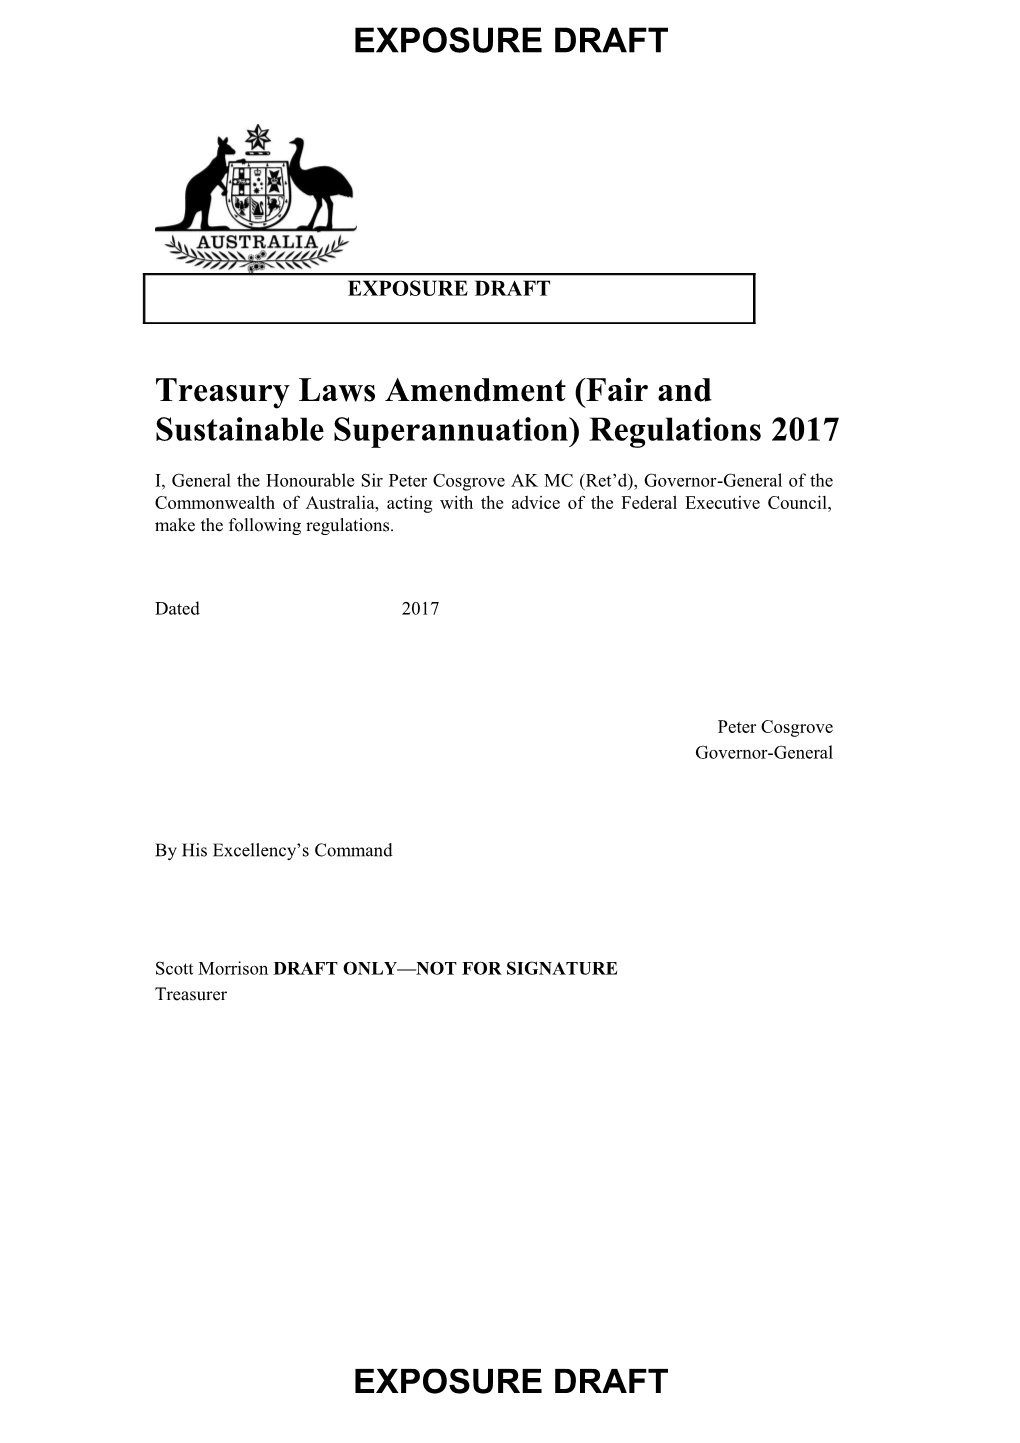 Exposure Draft - Treasury Laws Amendment (Fair and Sustainable Superannuation) Regulations 2017